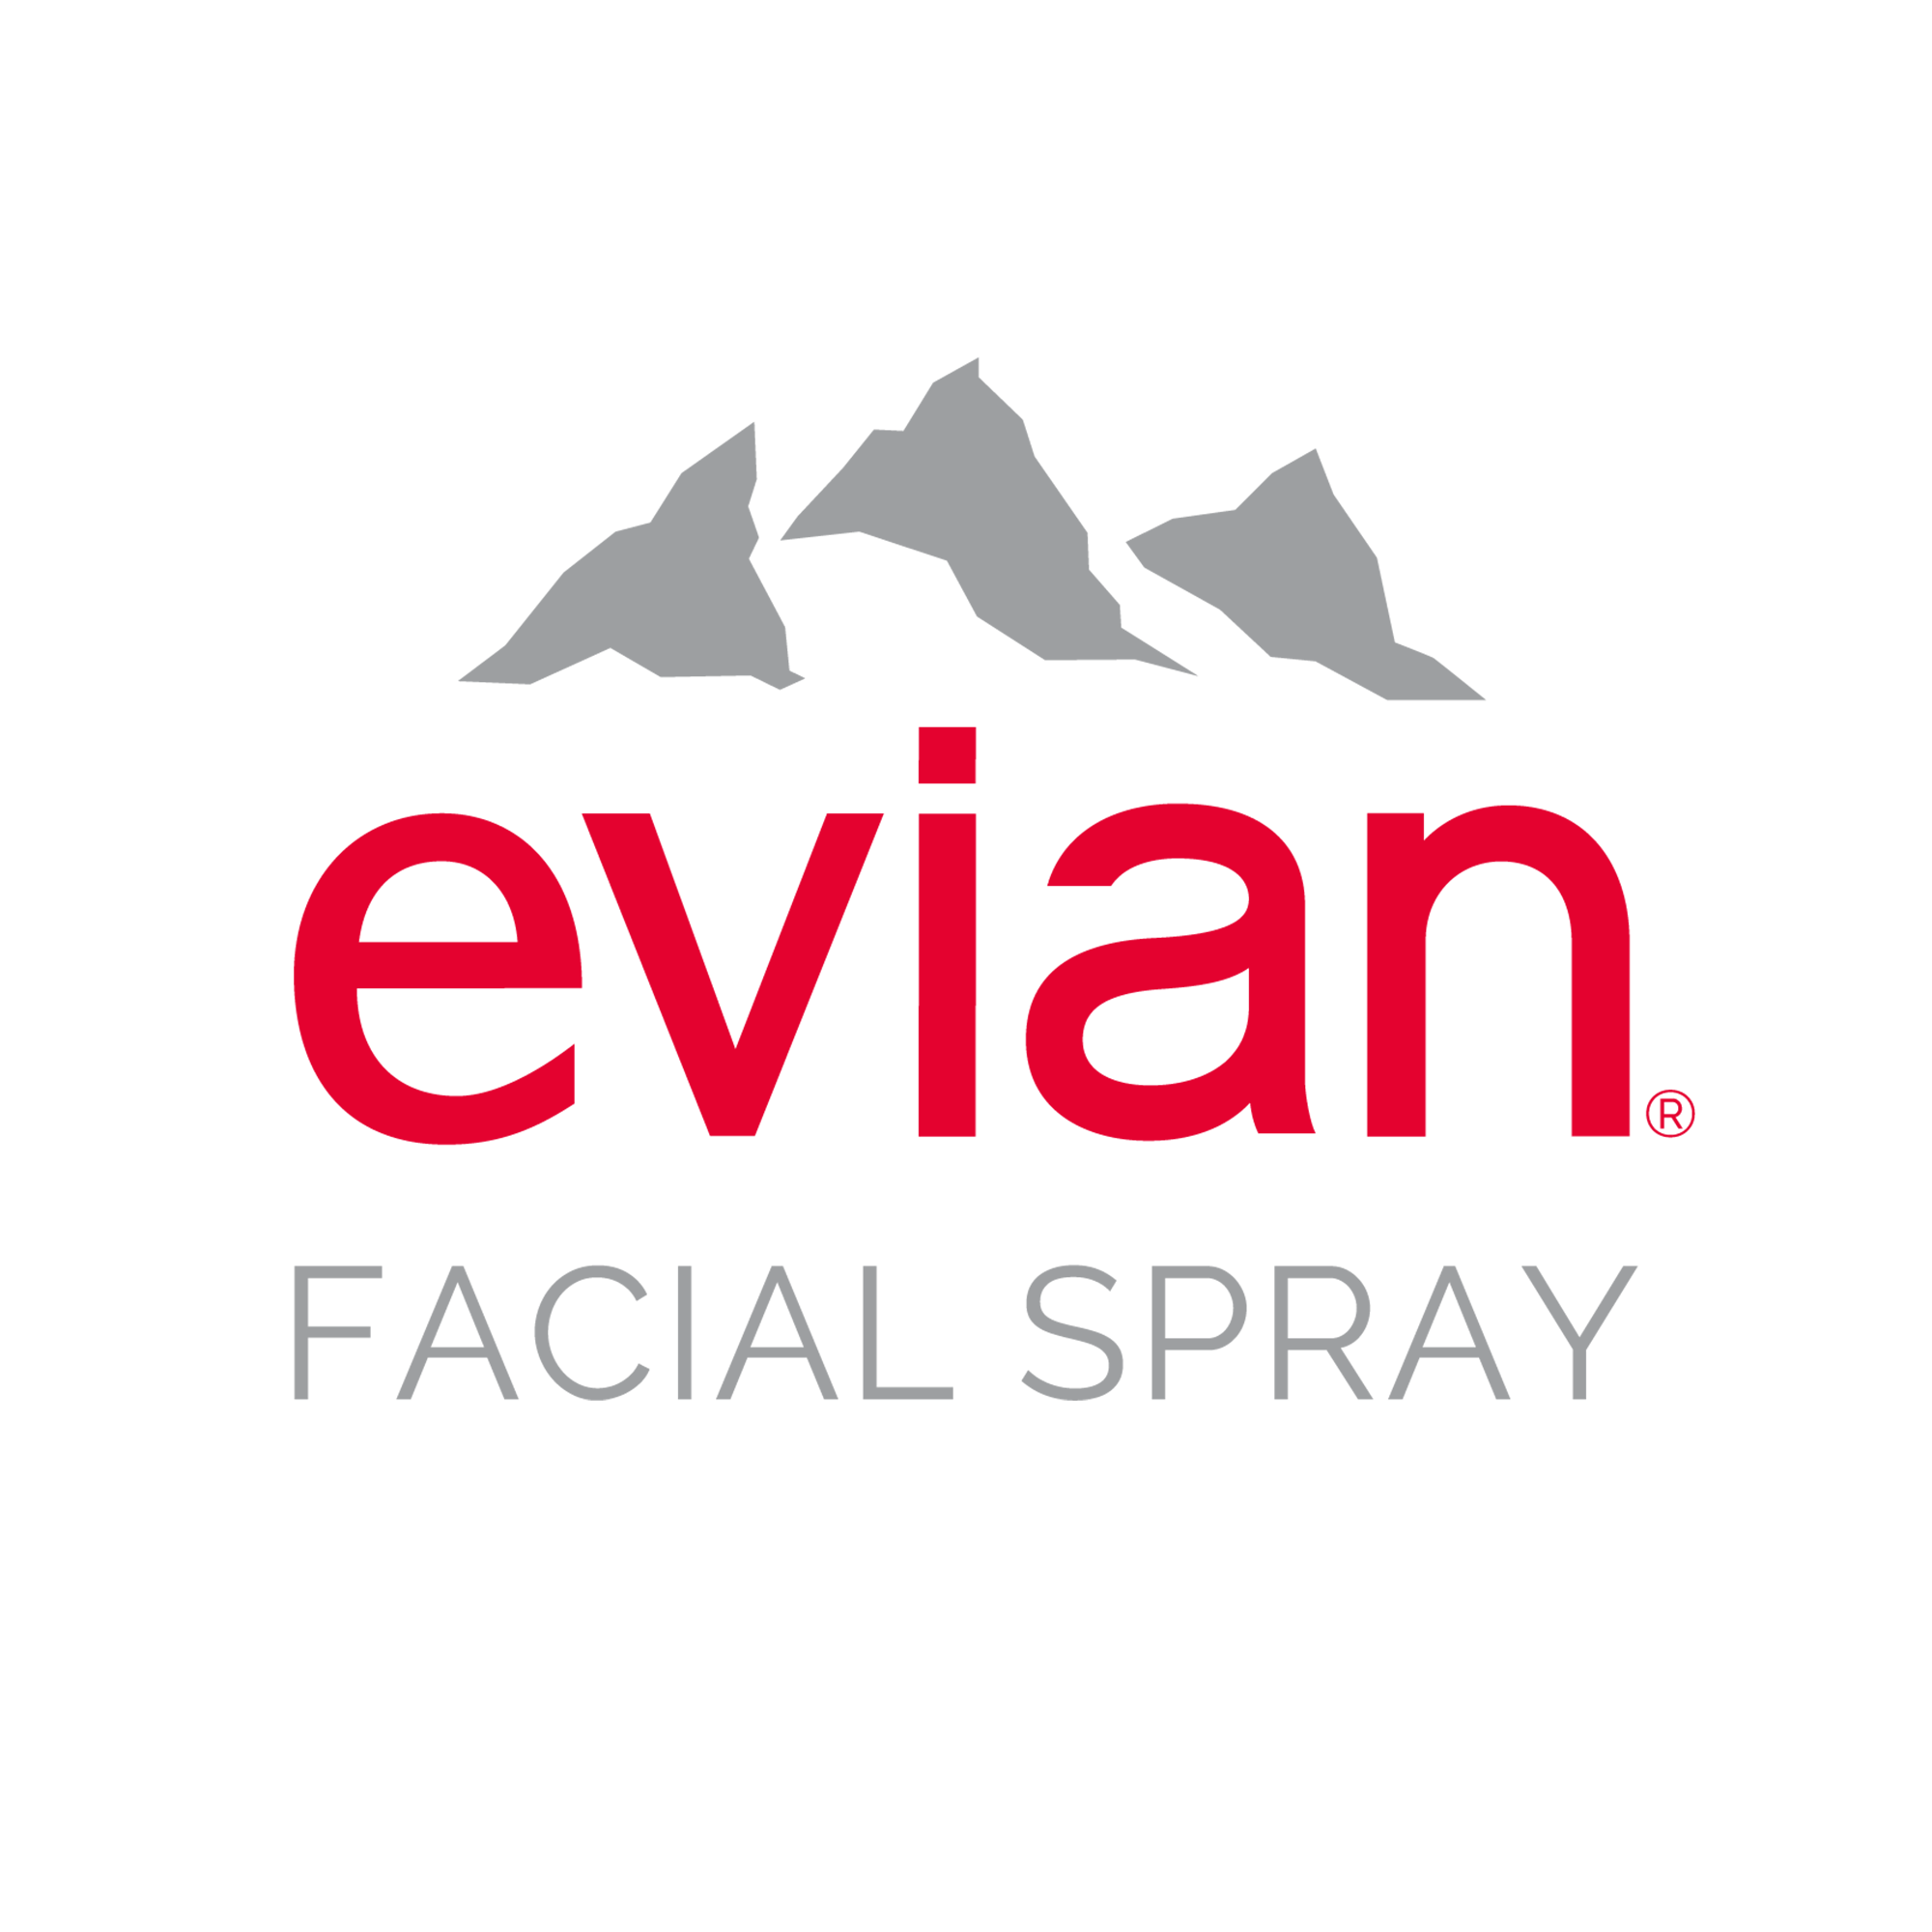 Acheter Evian eau thermale brumisateur Spray 300ml ? Maintenant pour € 14.2  chez Viata